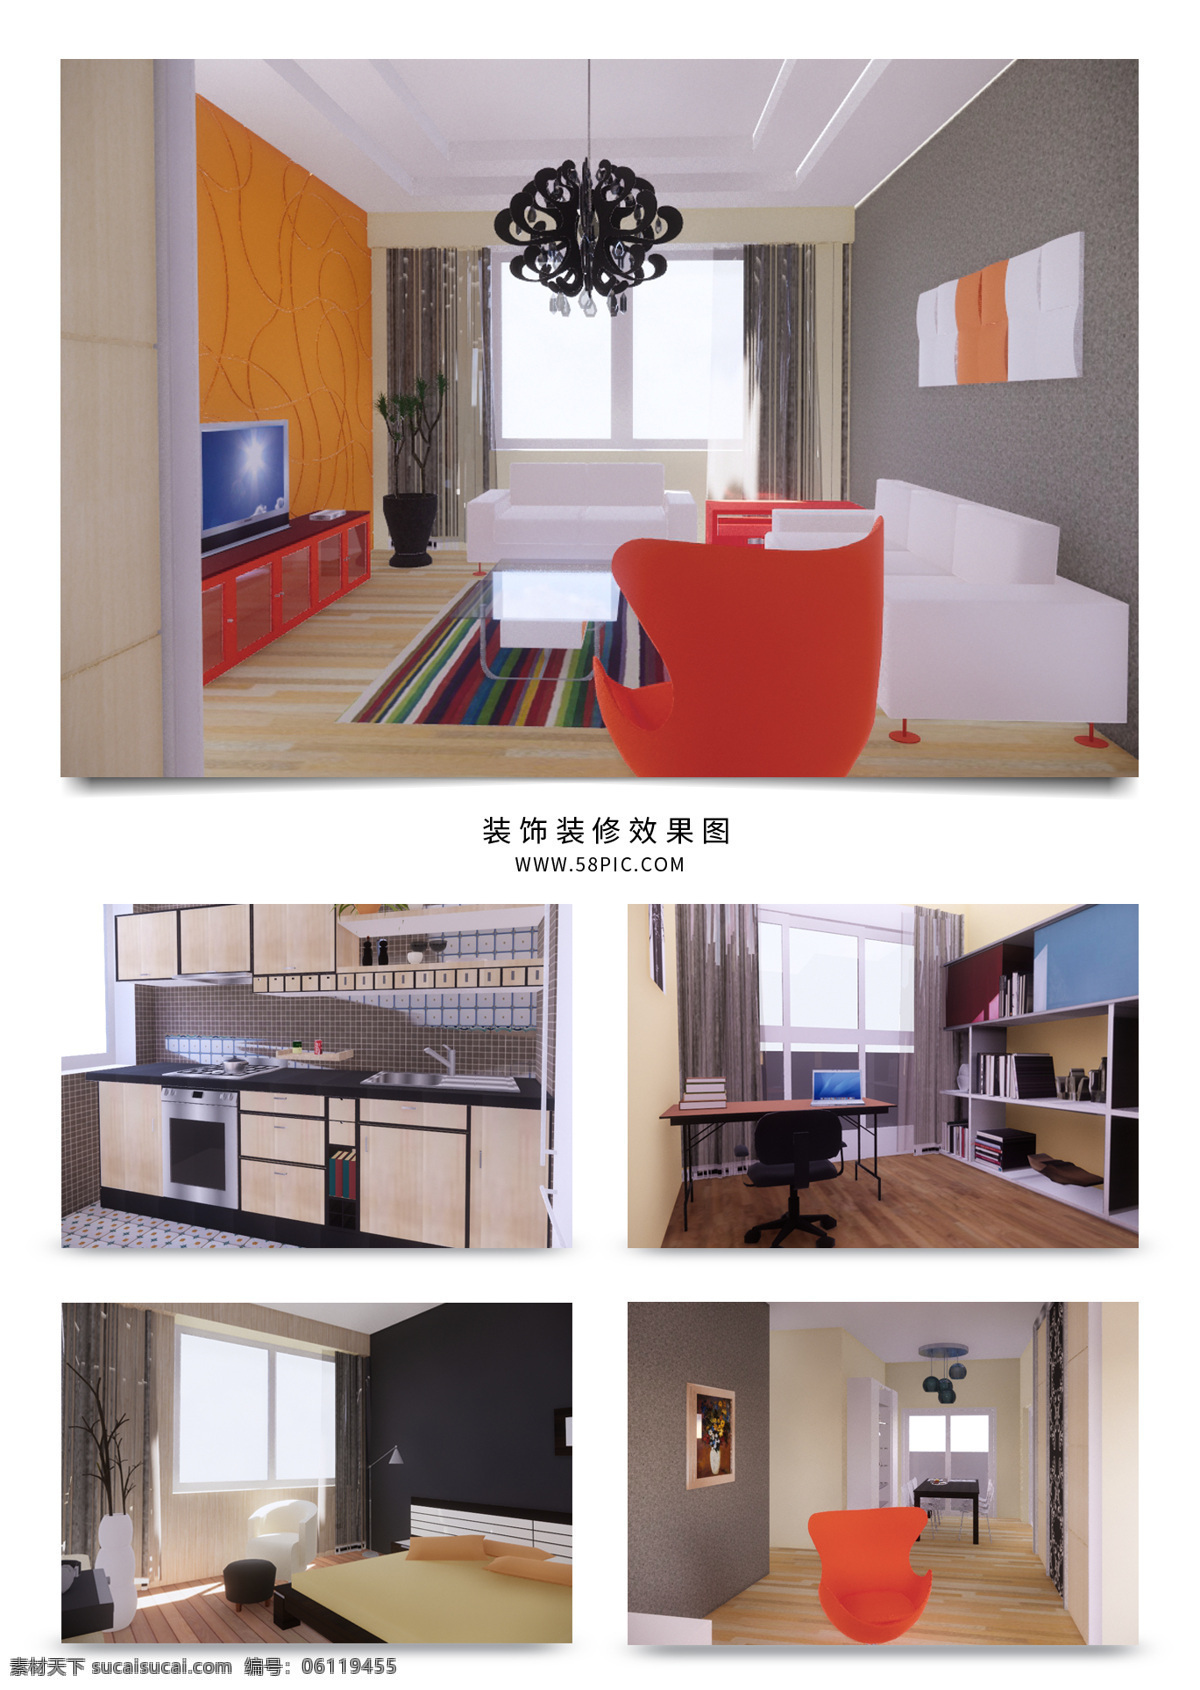 现代 简约 欧式 家装 效果图 材质 家具 户型 室内设计